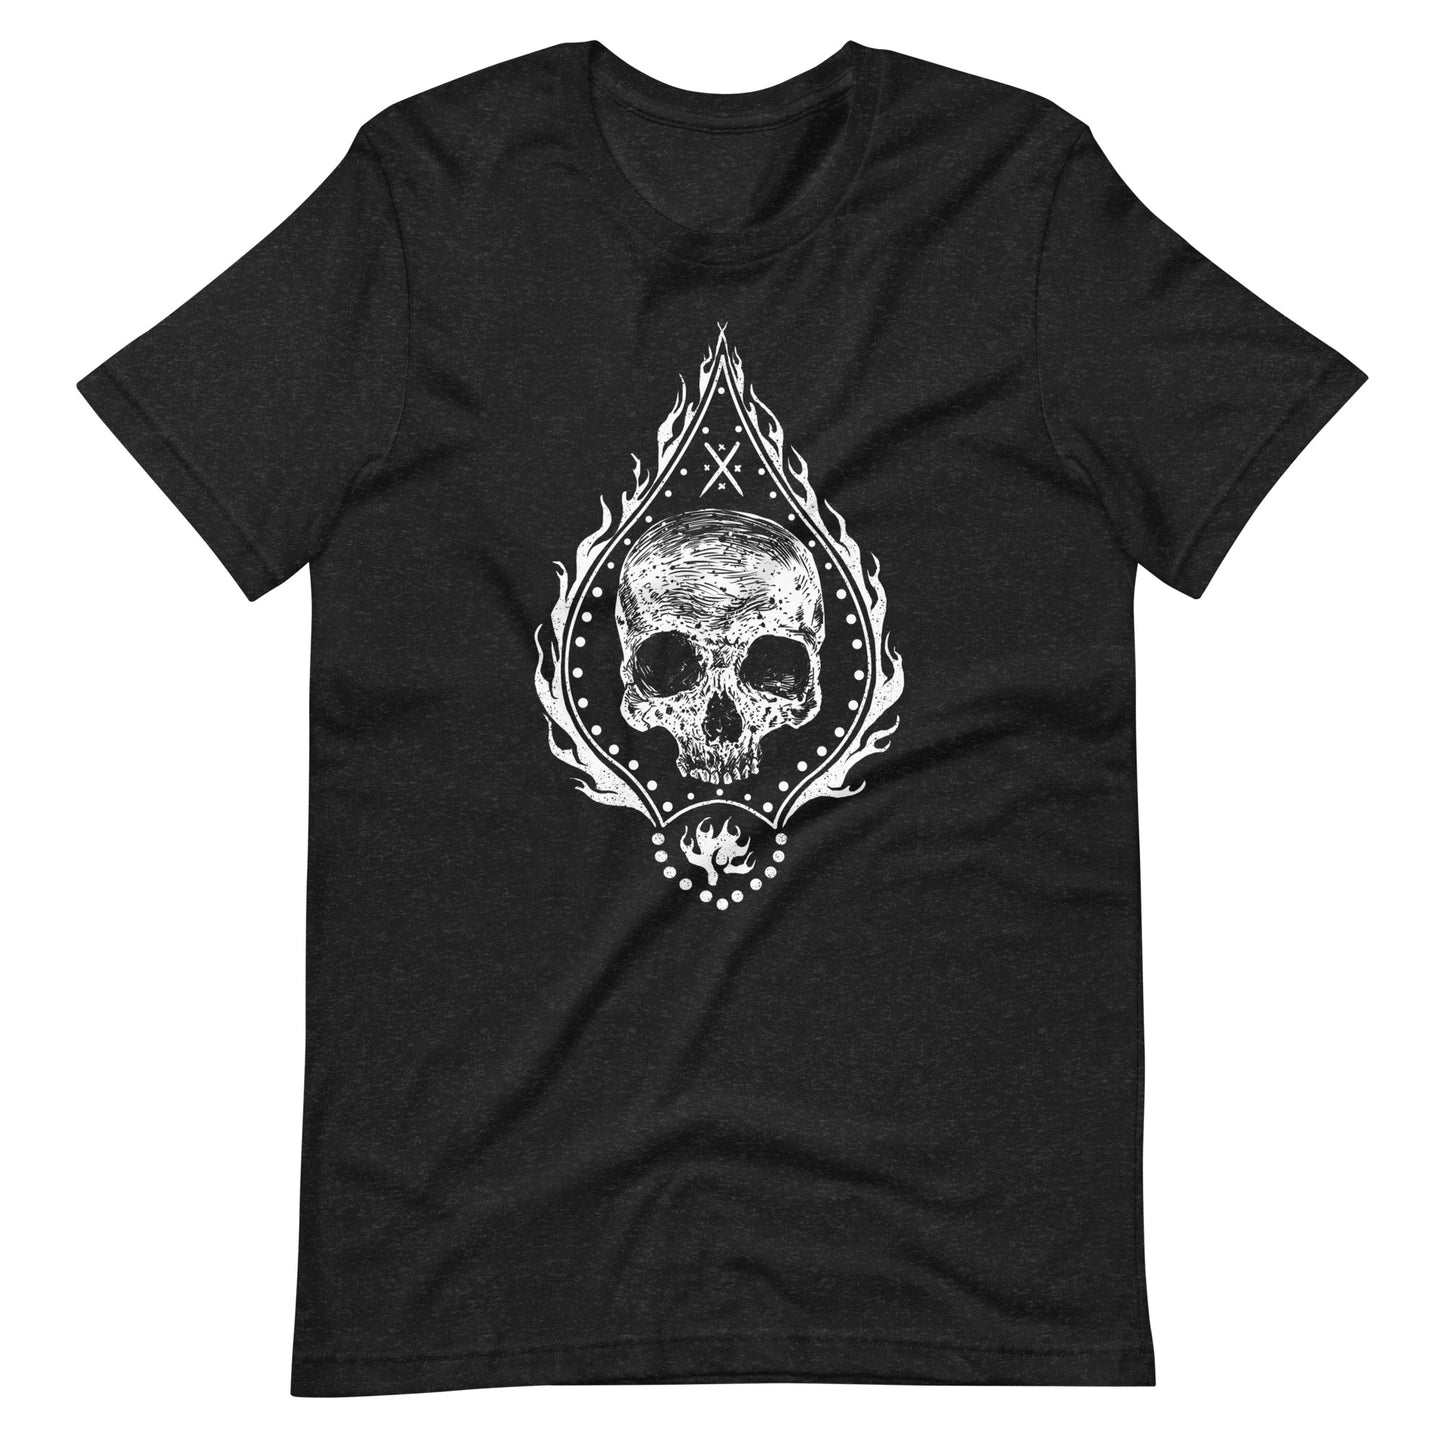 Fire Skull White - Men's t-shirt - Black Heather Front